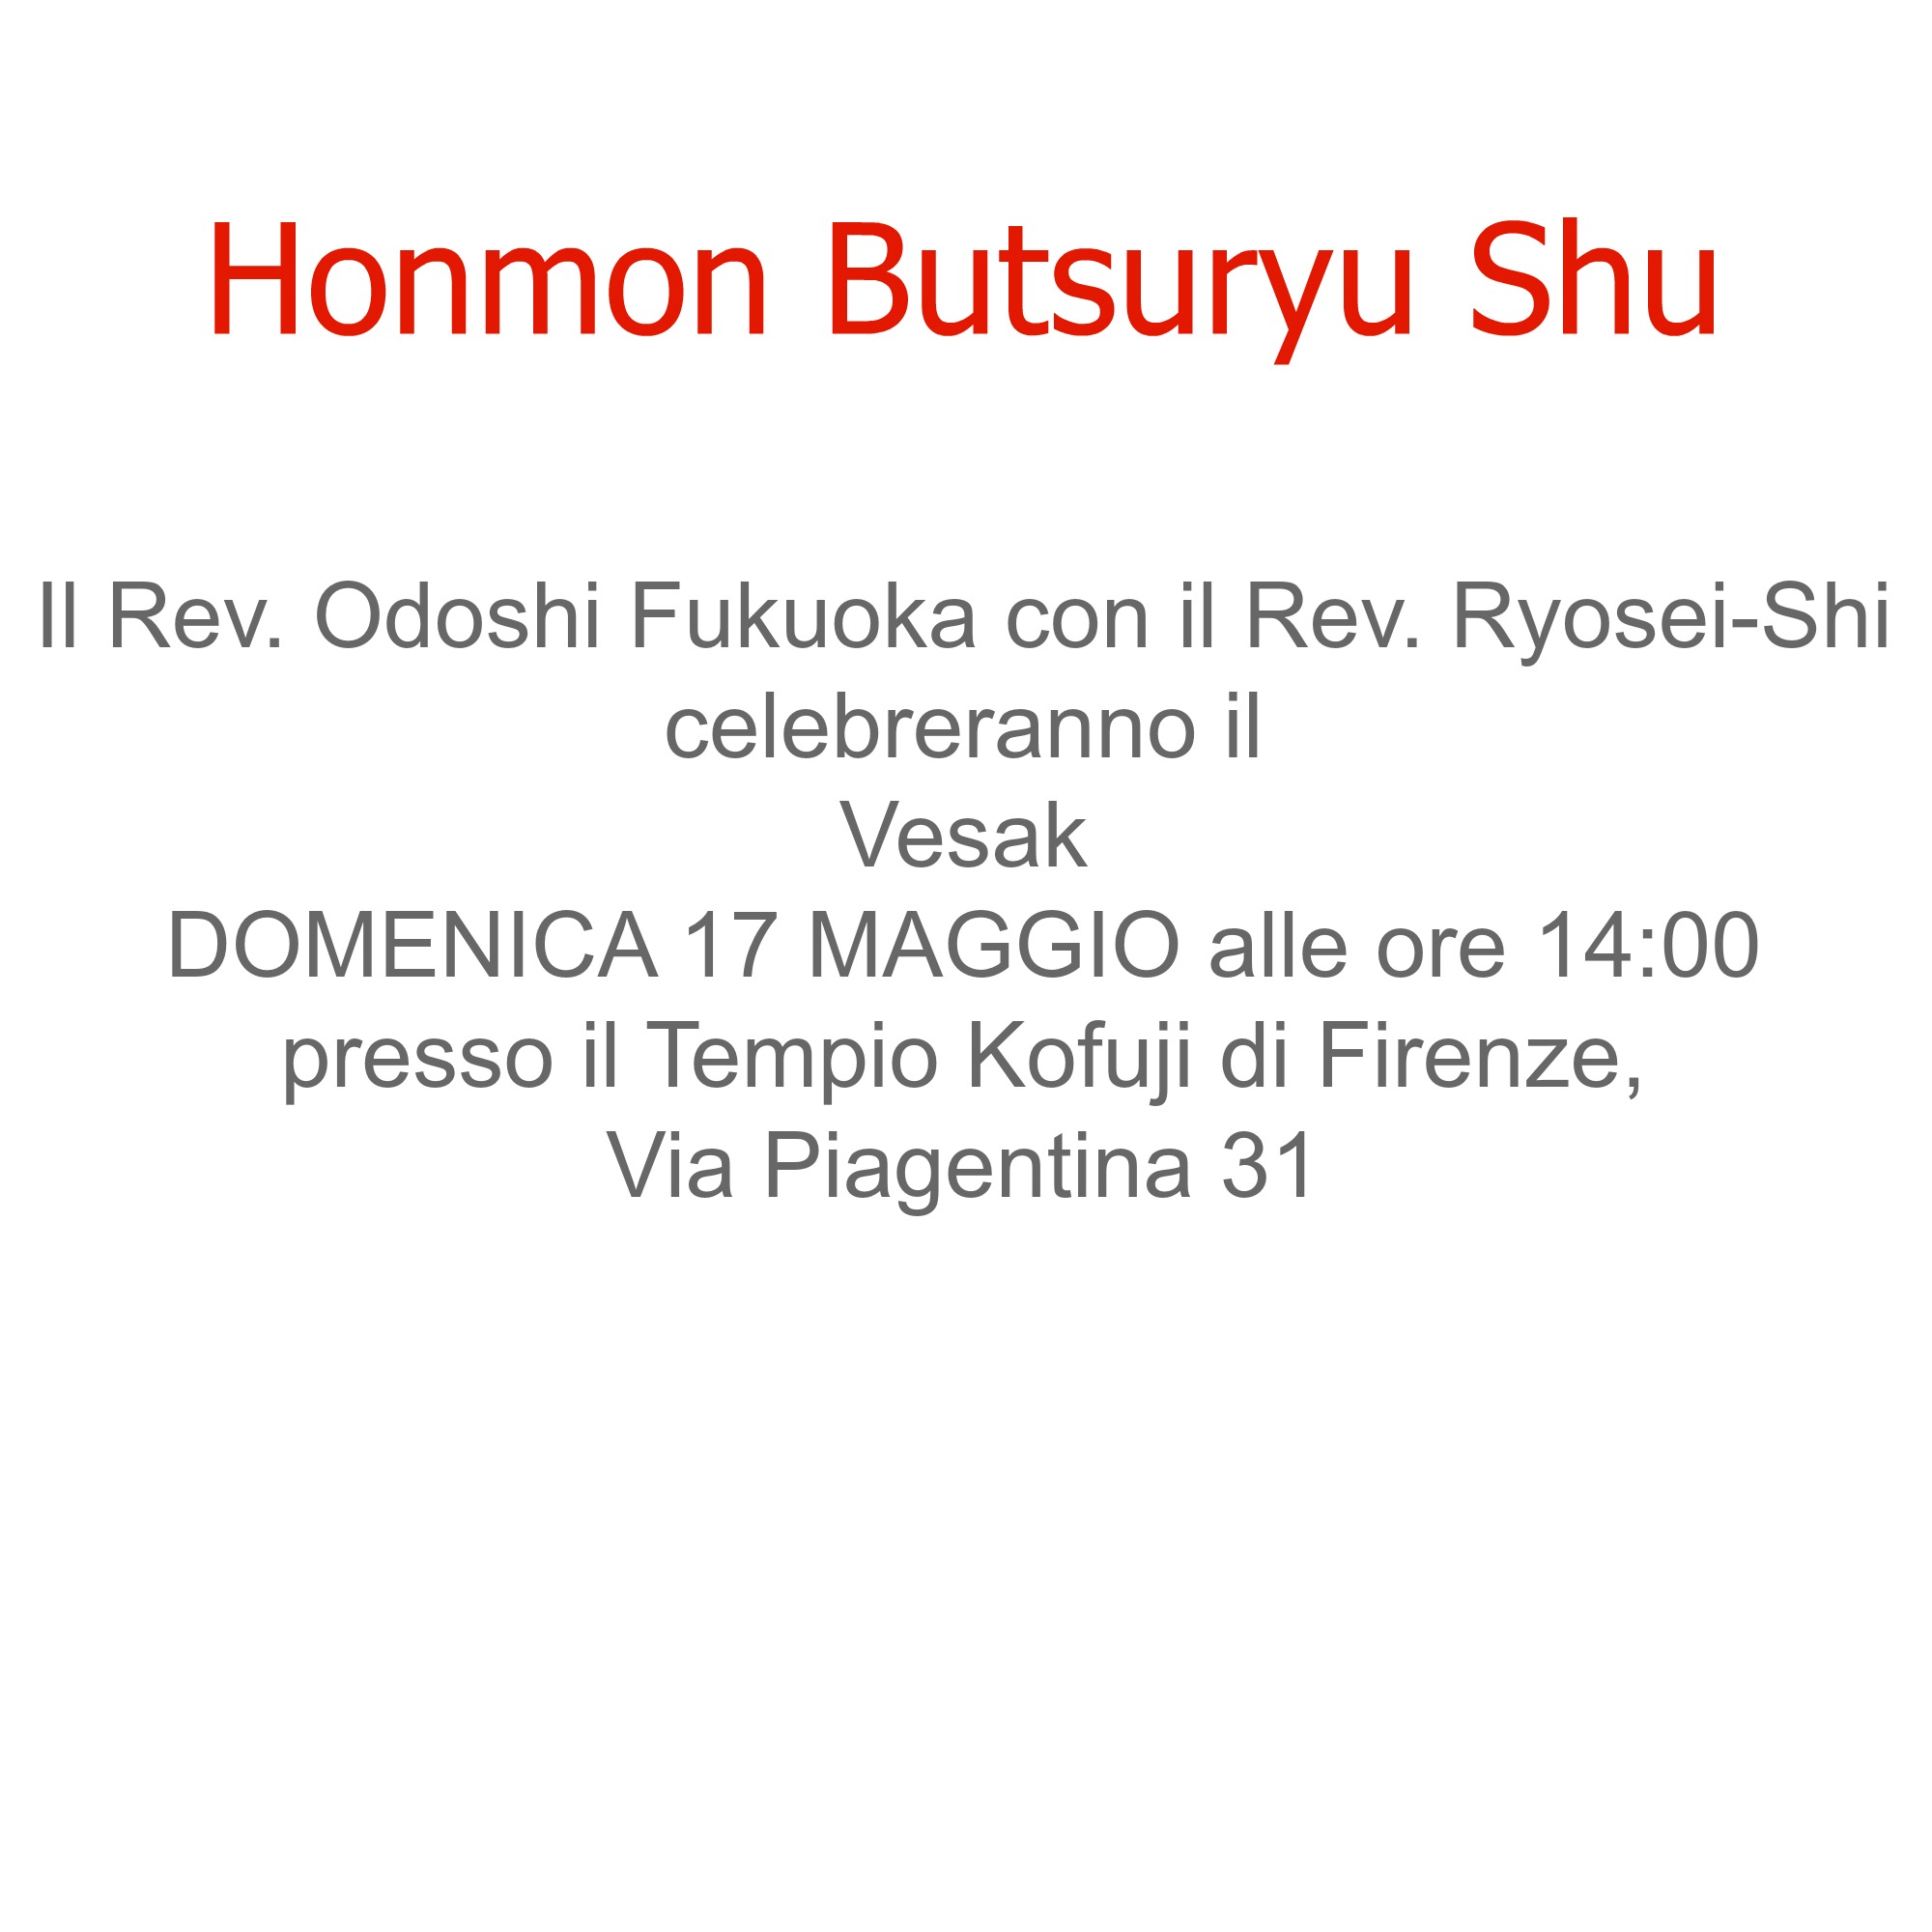 Honmon Butsuryu Shu